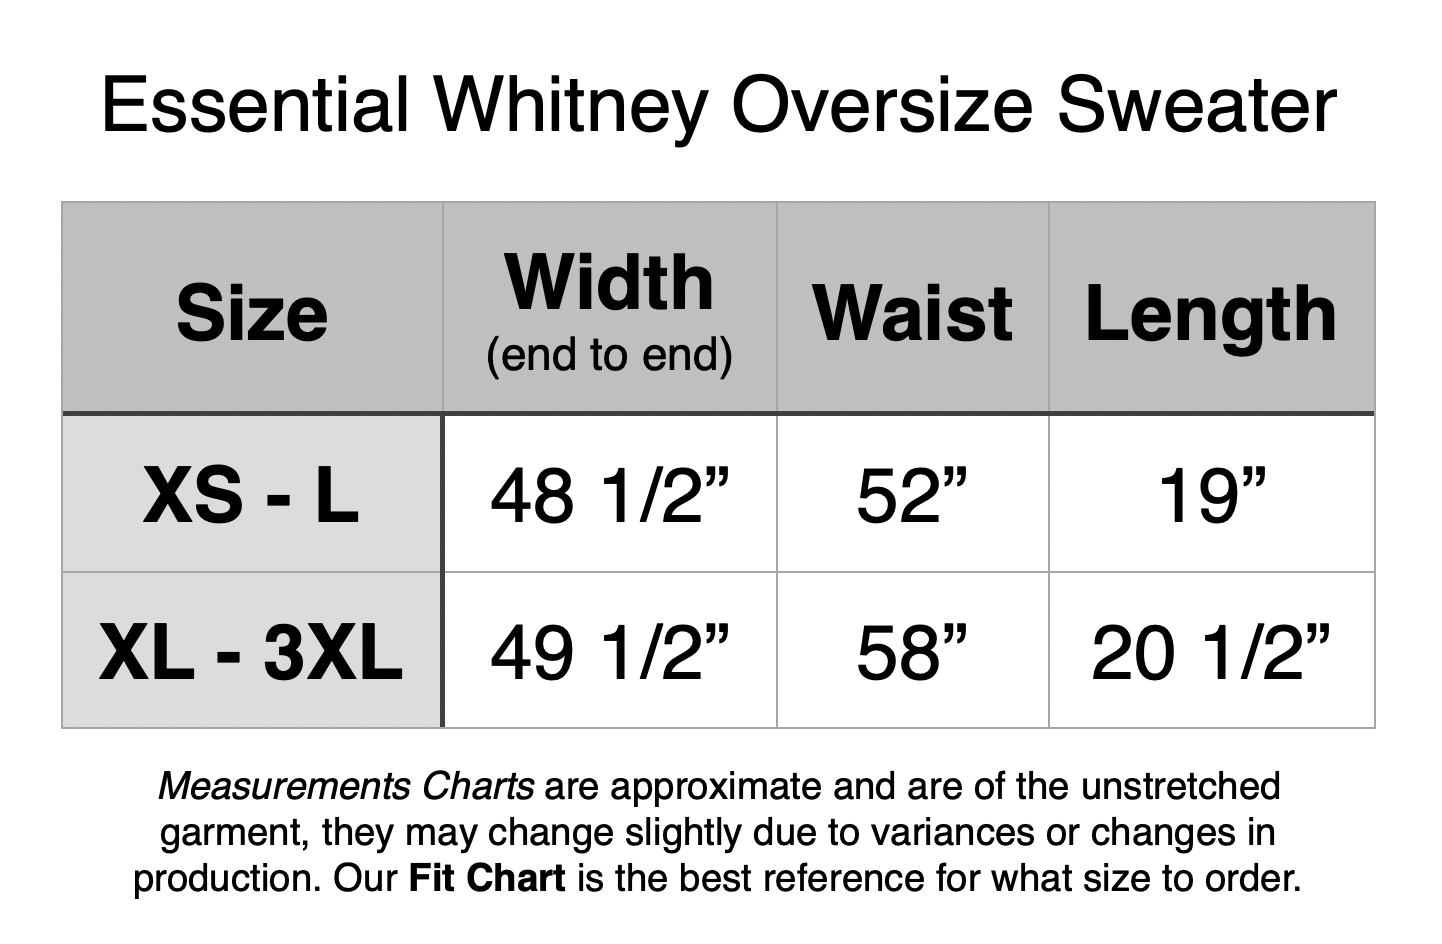 Essential Whitney Oversize Sweater. XS - L: 48.5” Width, 52” Waist, 19” Length. XL - 3XL: 49.5” Width, 58” Waist, 20.5” Length.